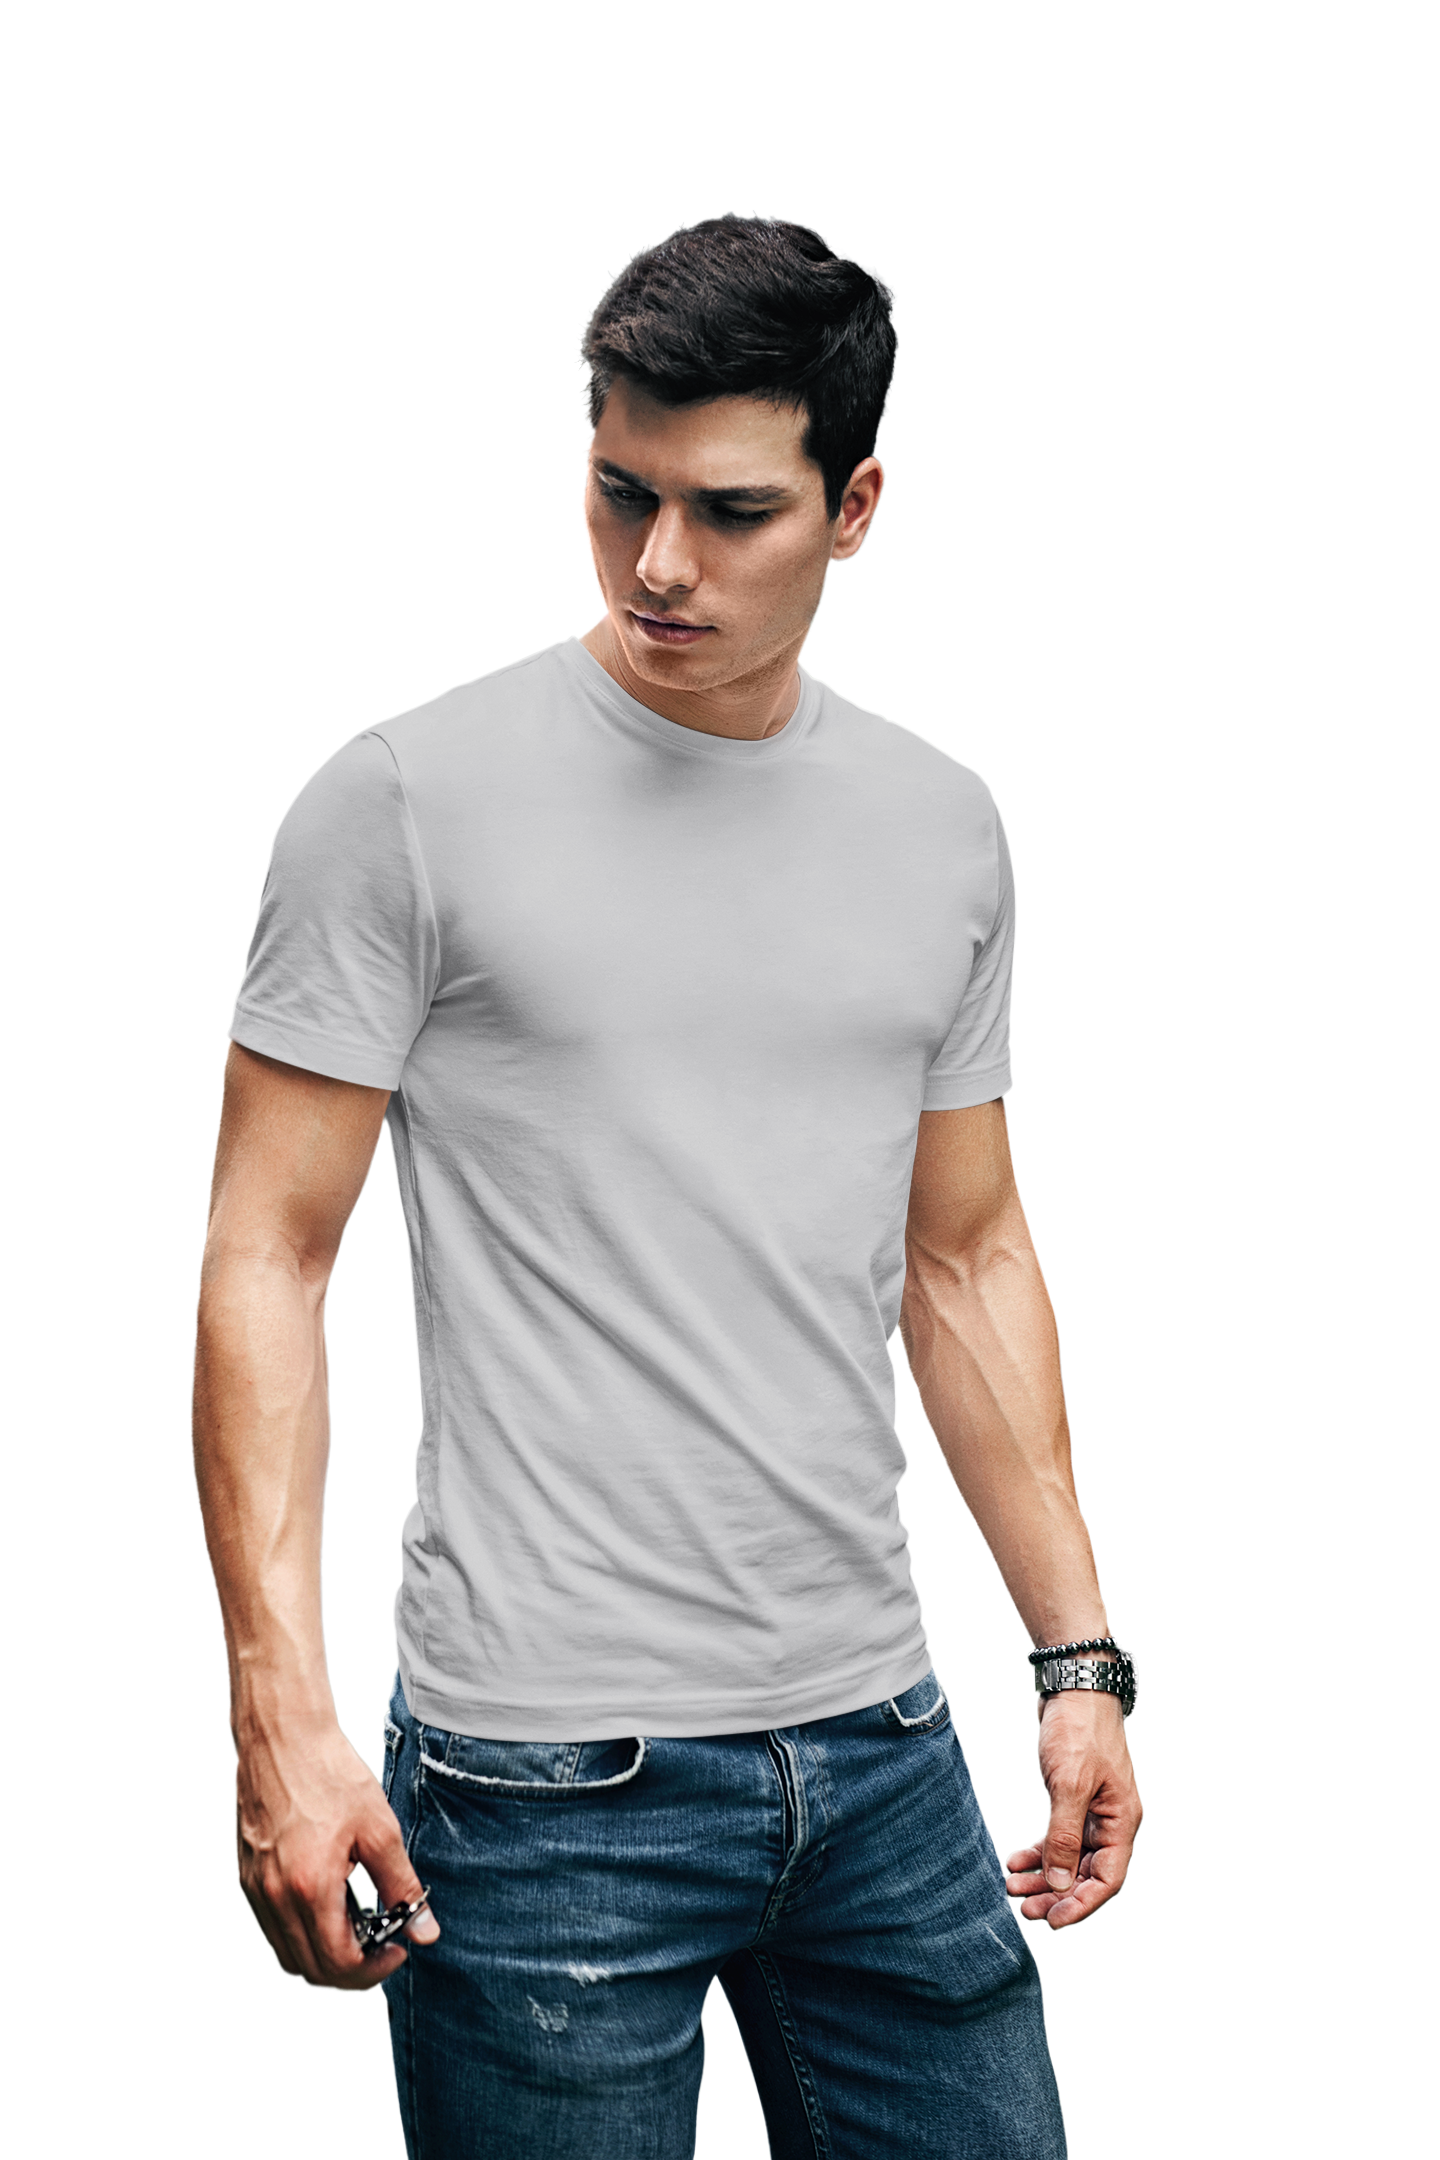 UrDeal Mens Round Neck Half Sleeve Tshirt